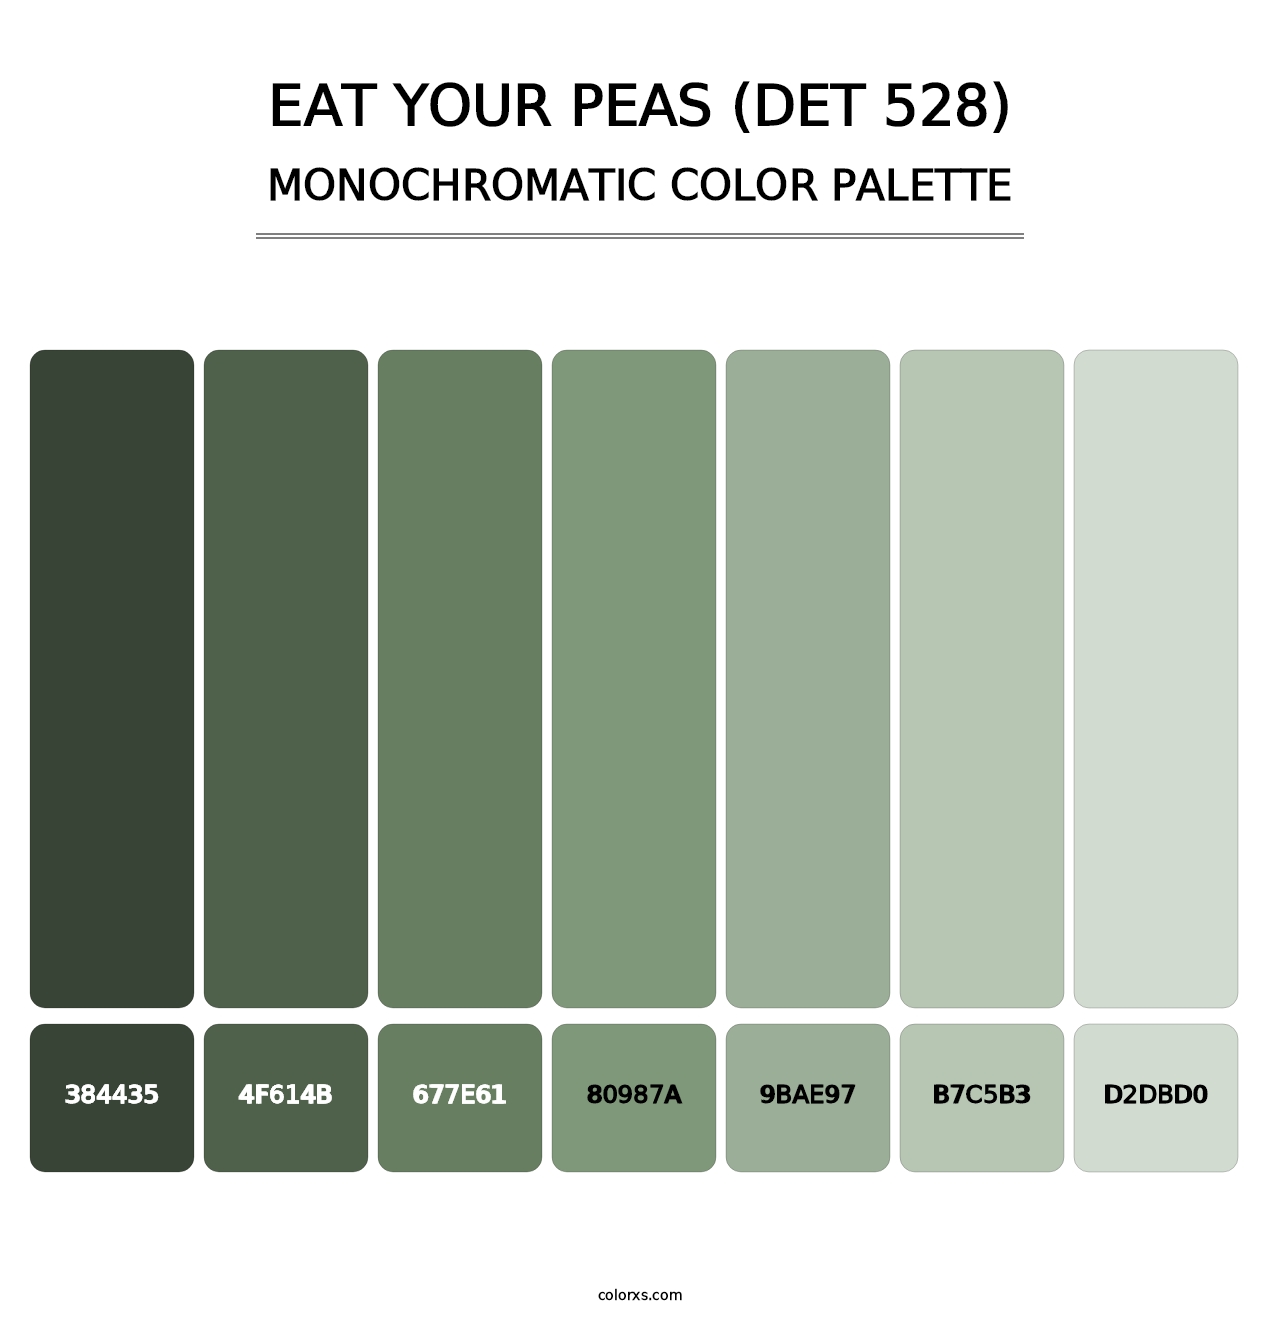 Eat Your Peas (DET 528) - Monochromatic Color Palette